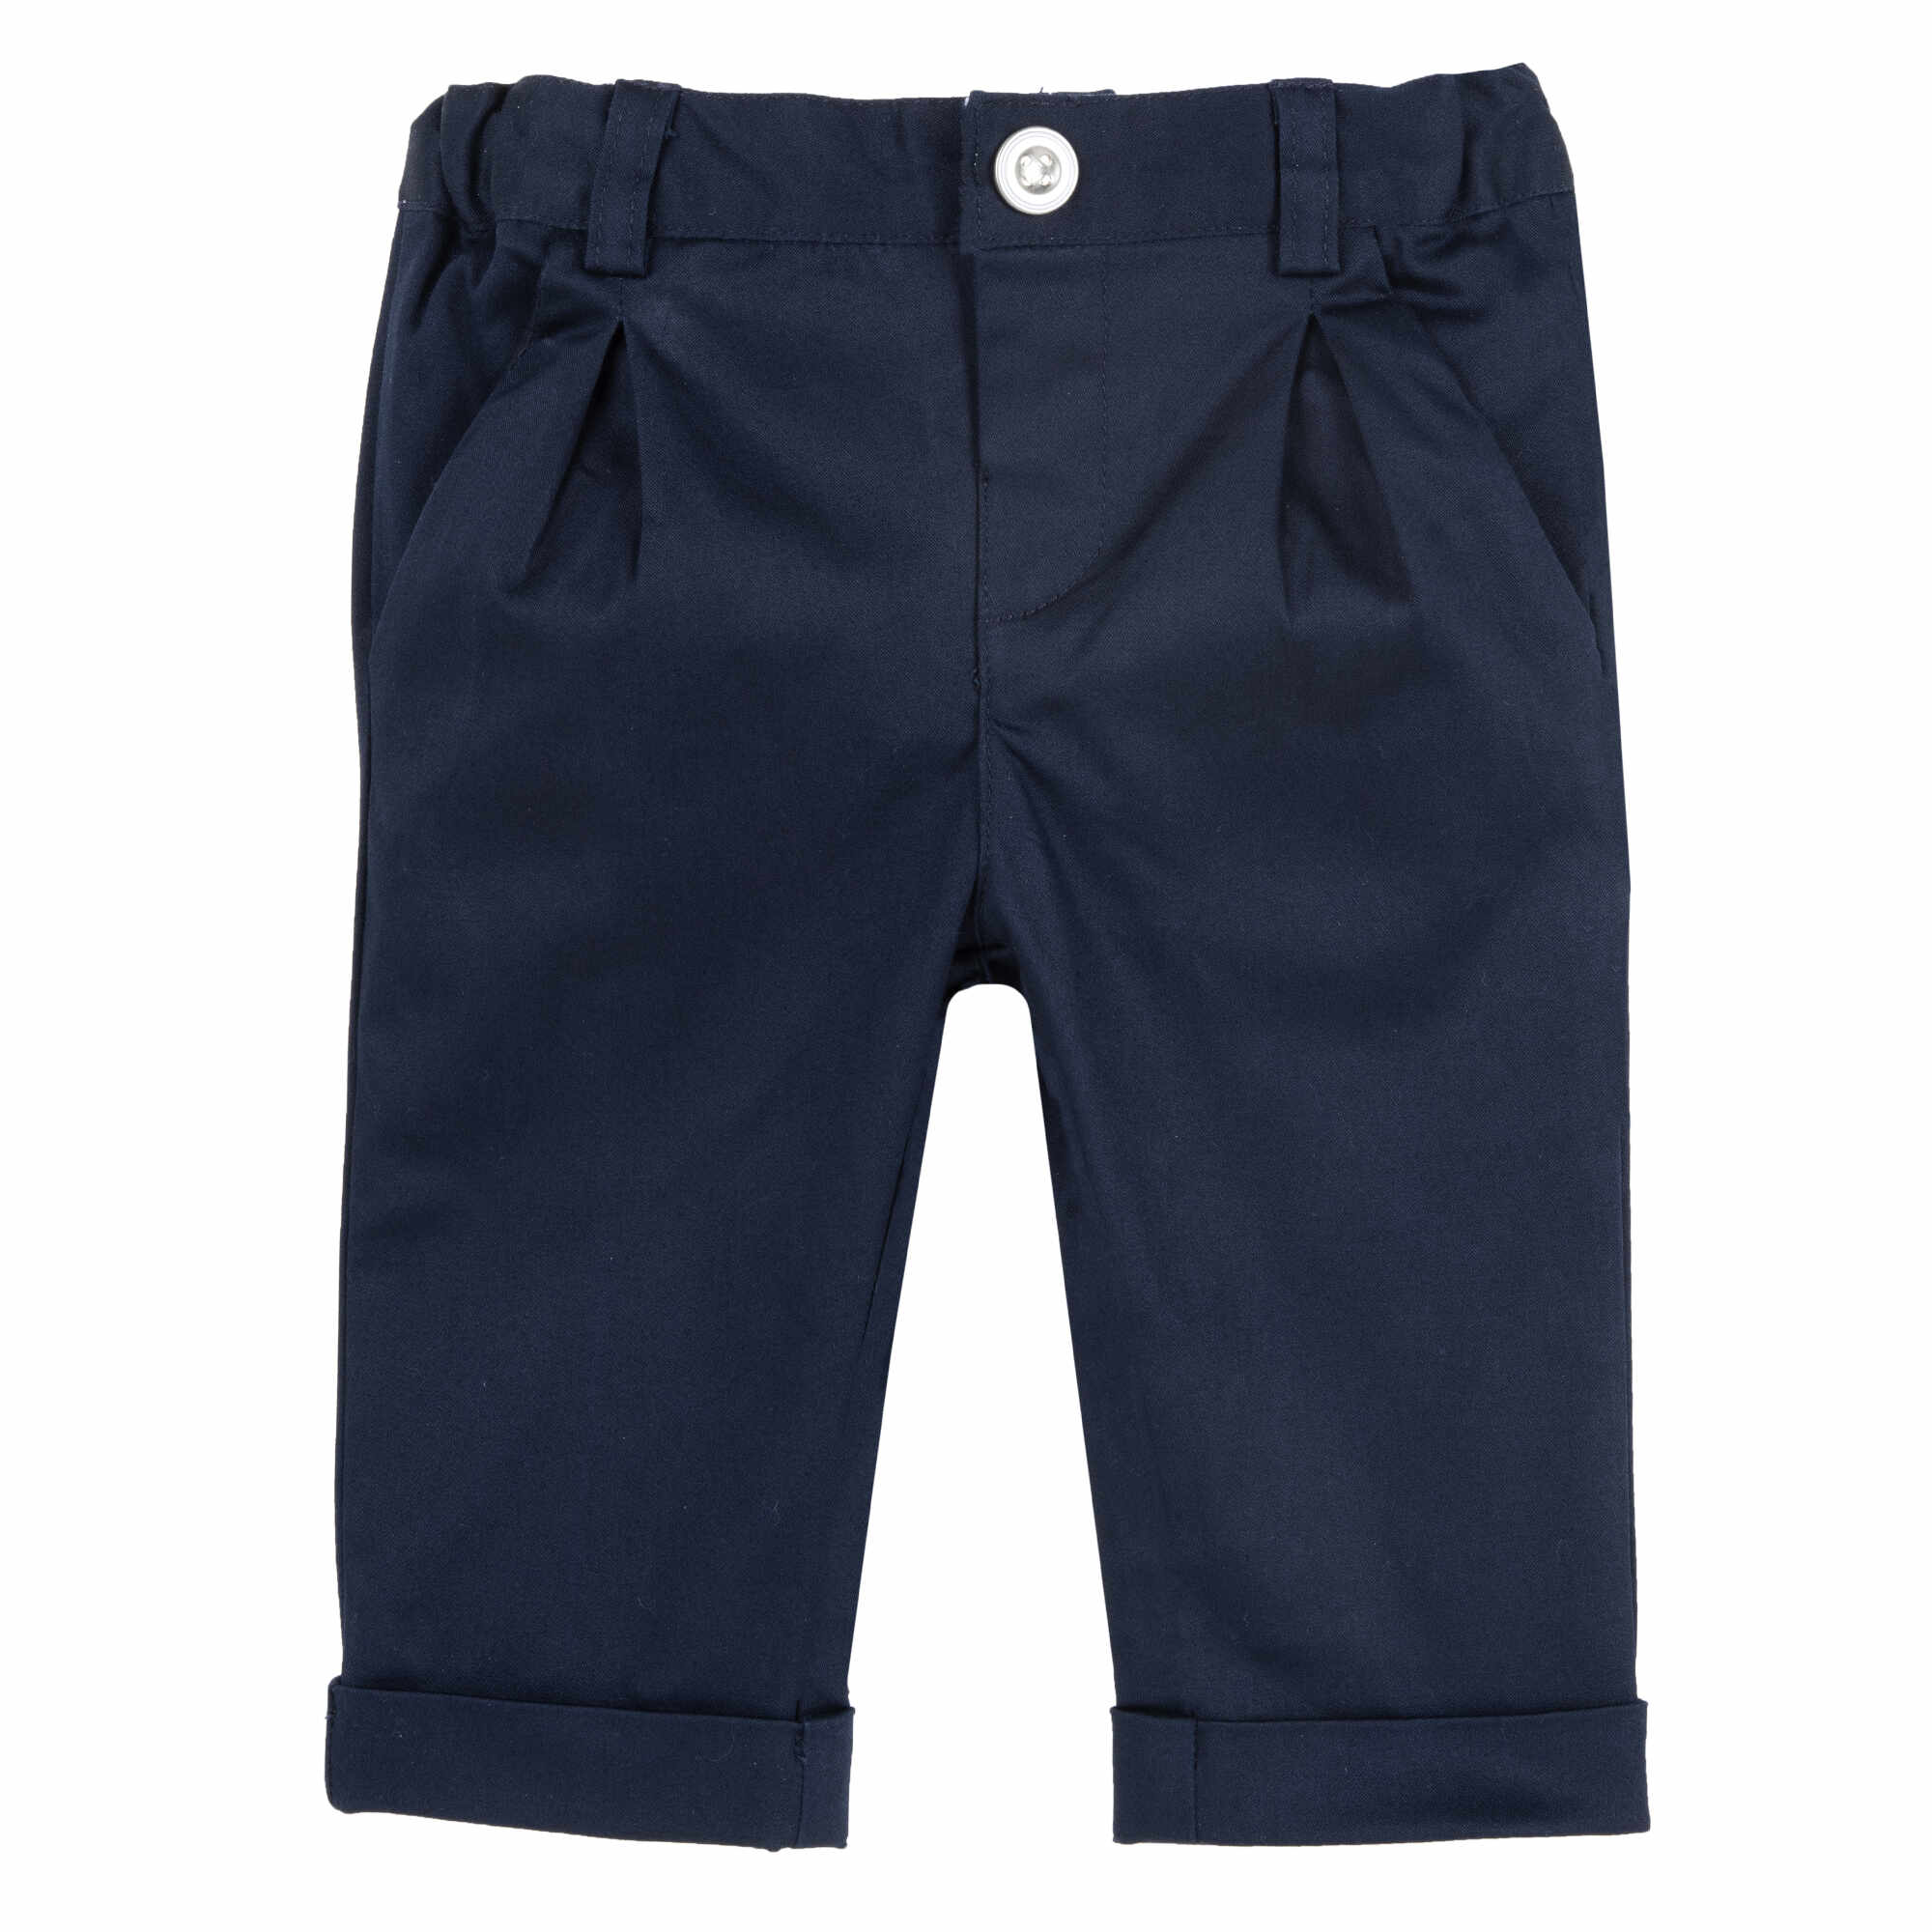 Pantaloni copii Chicco satin, albastru, 08628